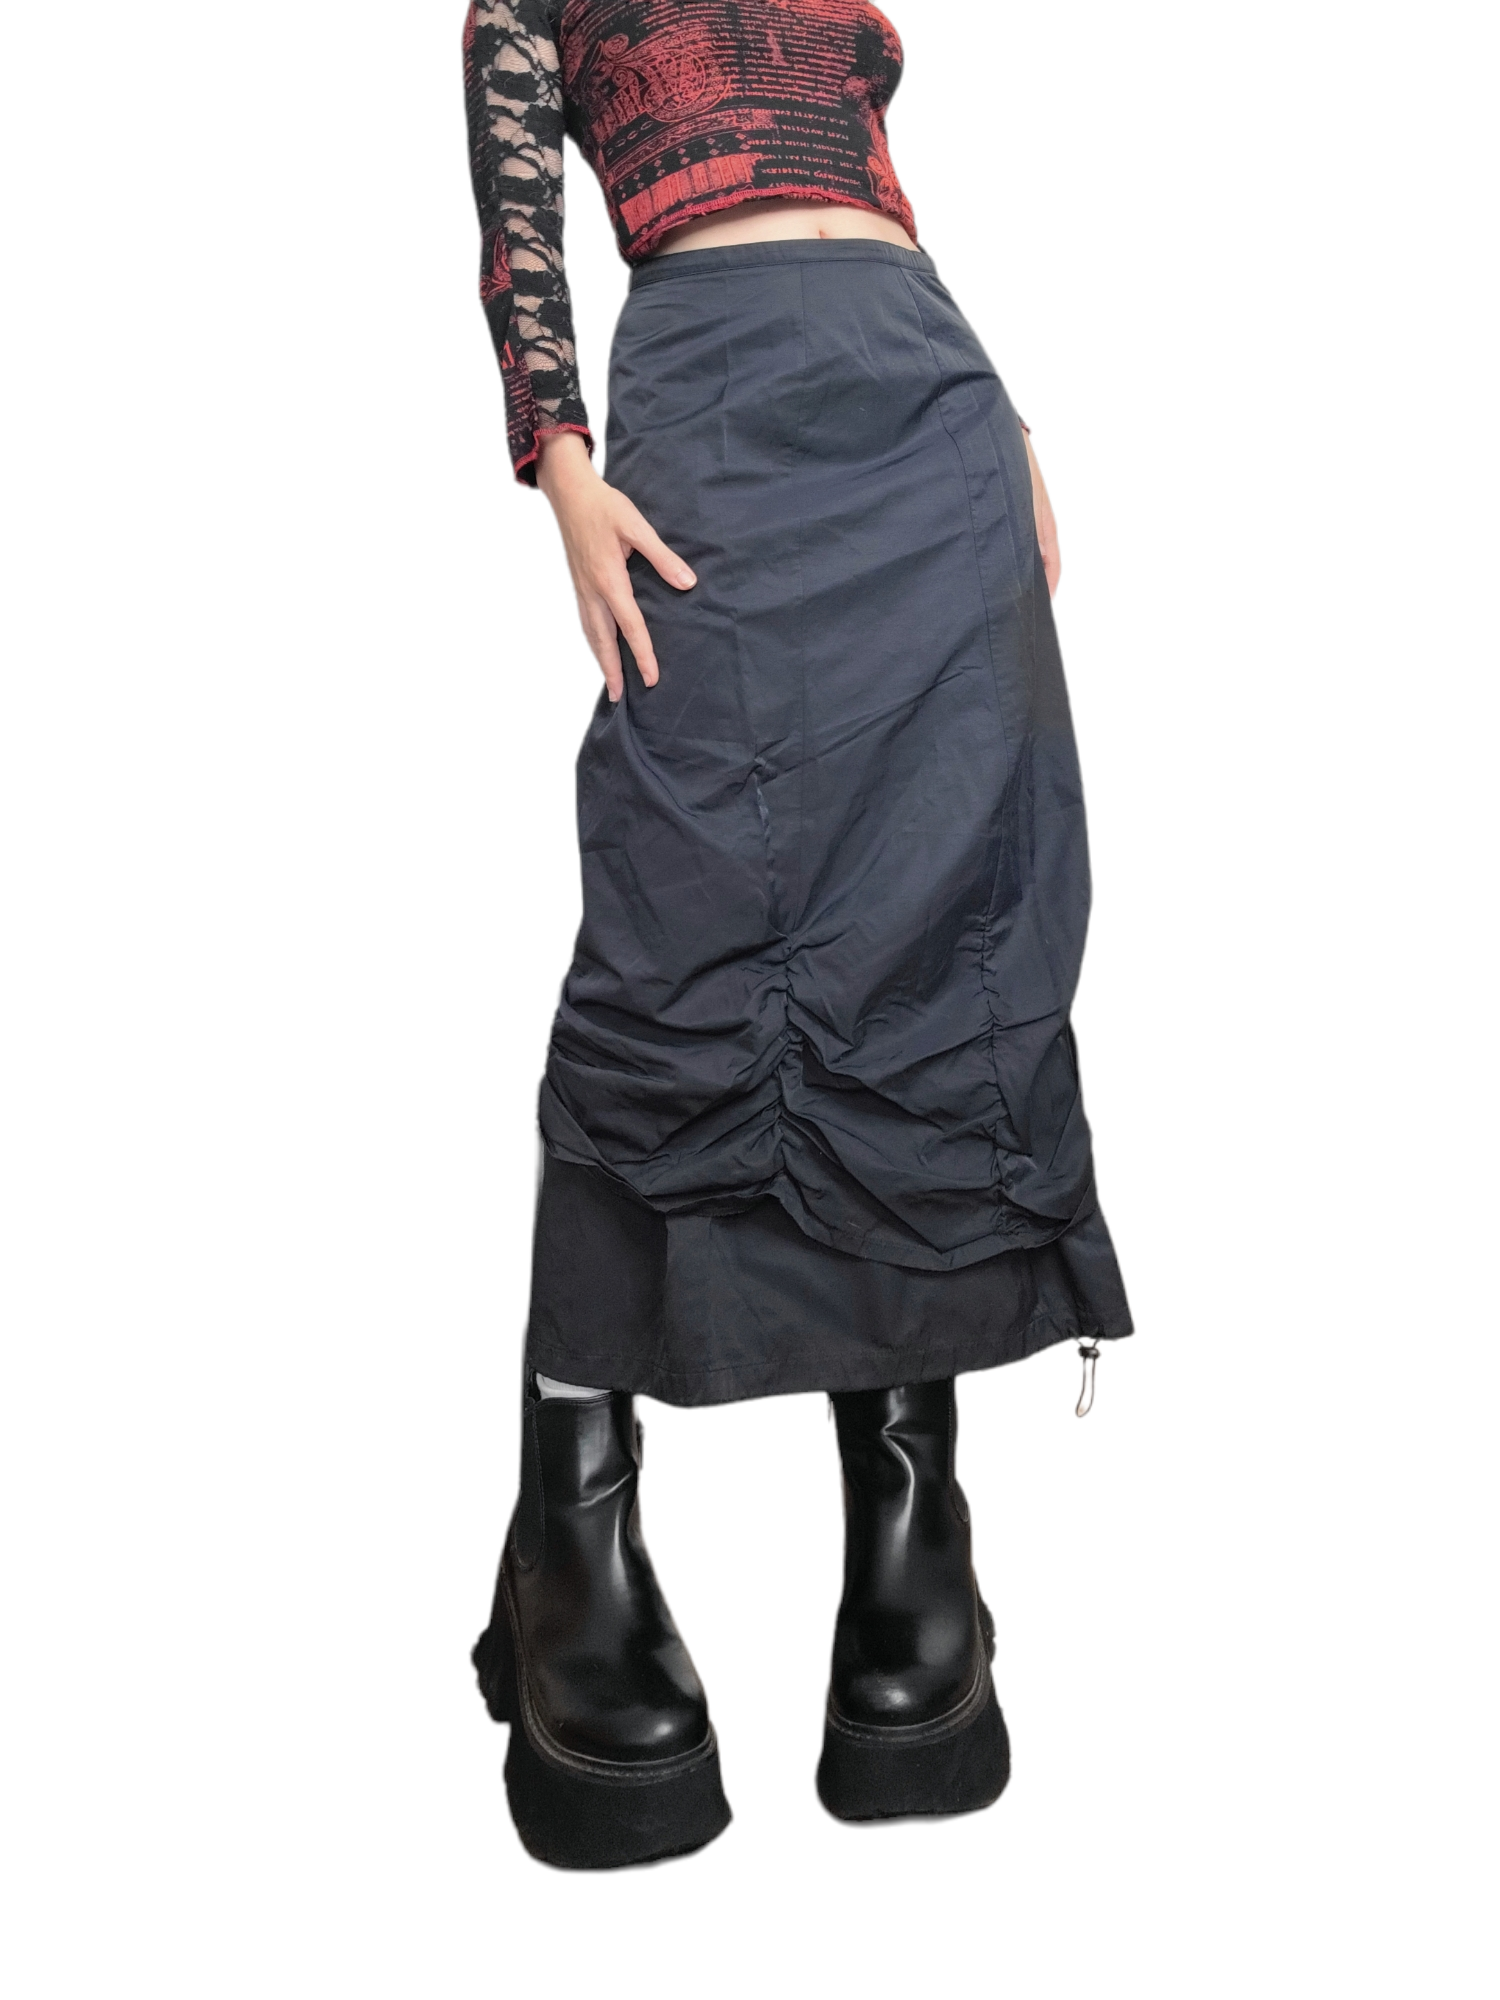 Maxi skirt parachute noire techwear vintage y2k cyber rave futuristic